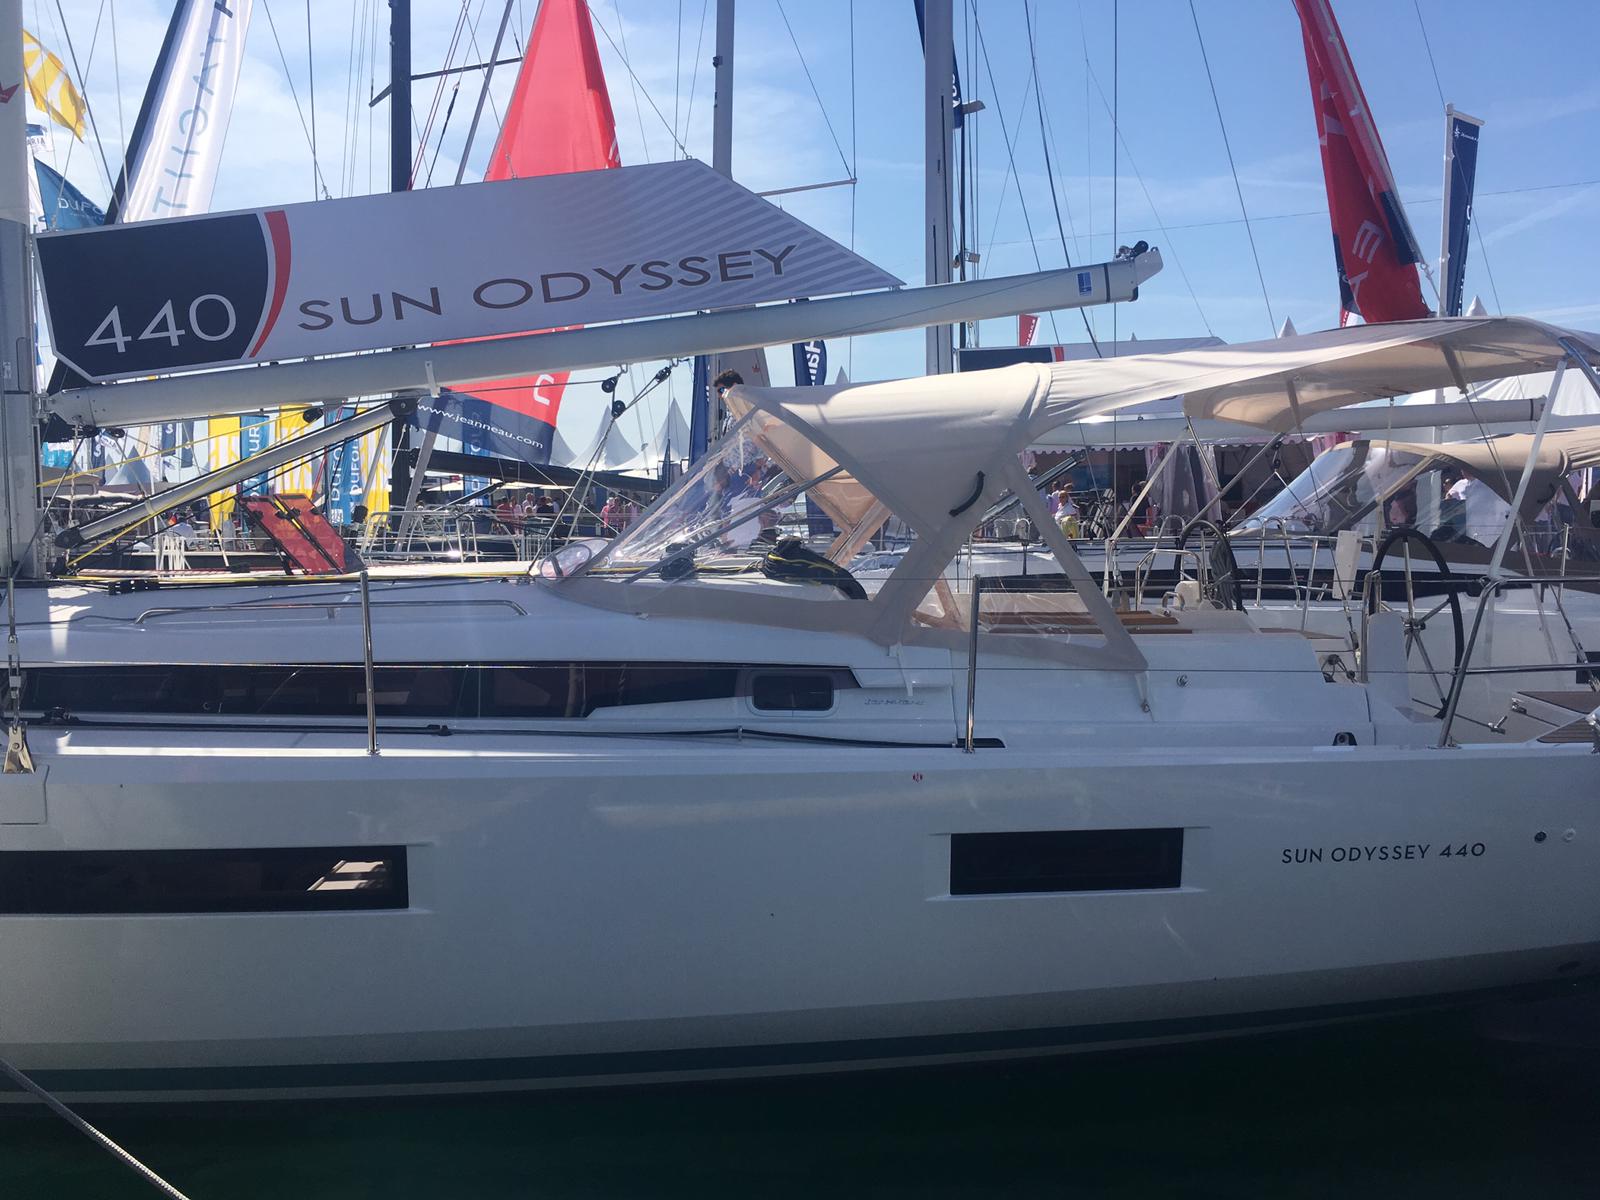 Sun Odyssey 440 - Yacht Charter San Vincenzo & Boat hire in Italy San Vincenzo Marina di San Vincenzo 6